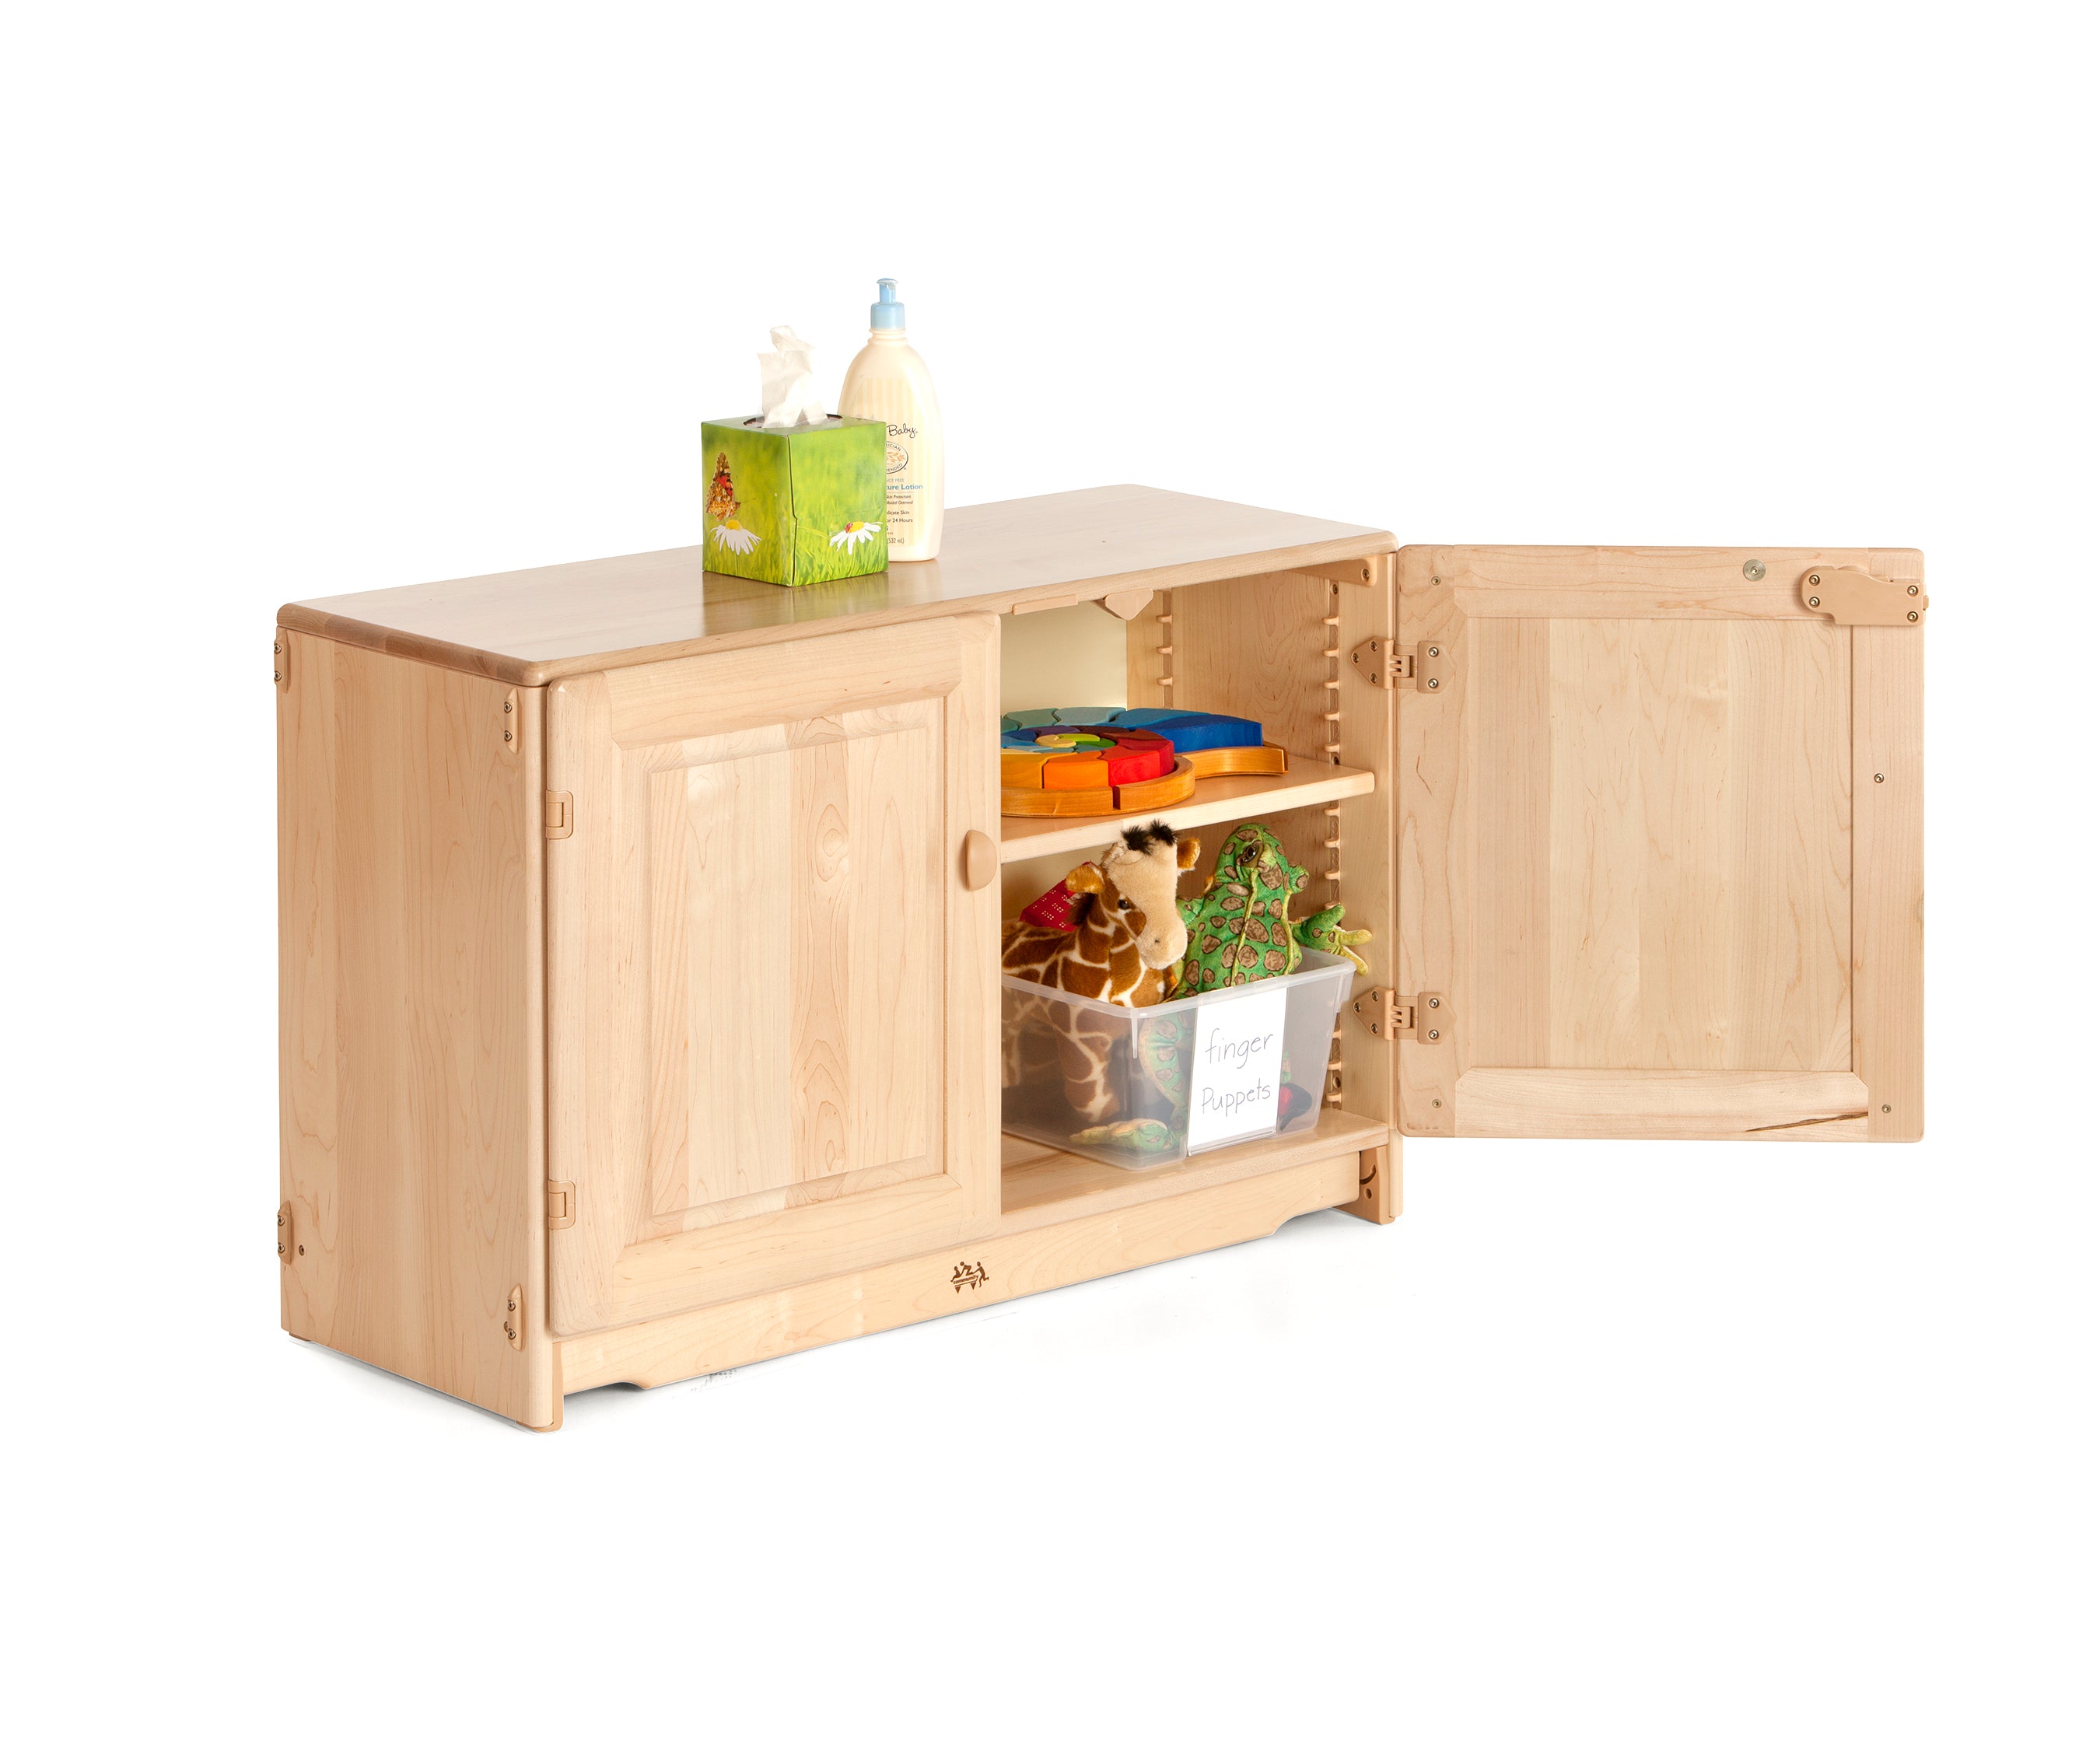 Adjustable Shelf with Doors 3' x 24" by Community Playthings - louisekool